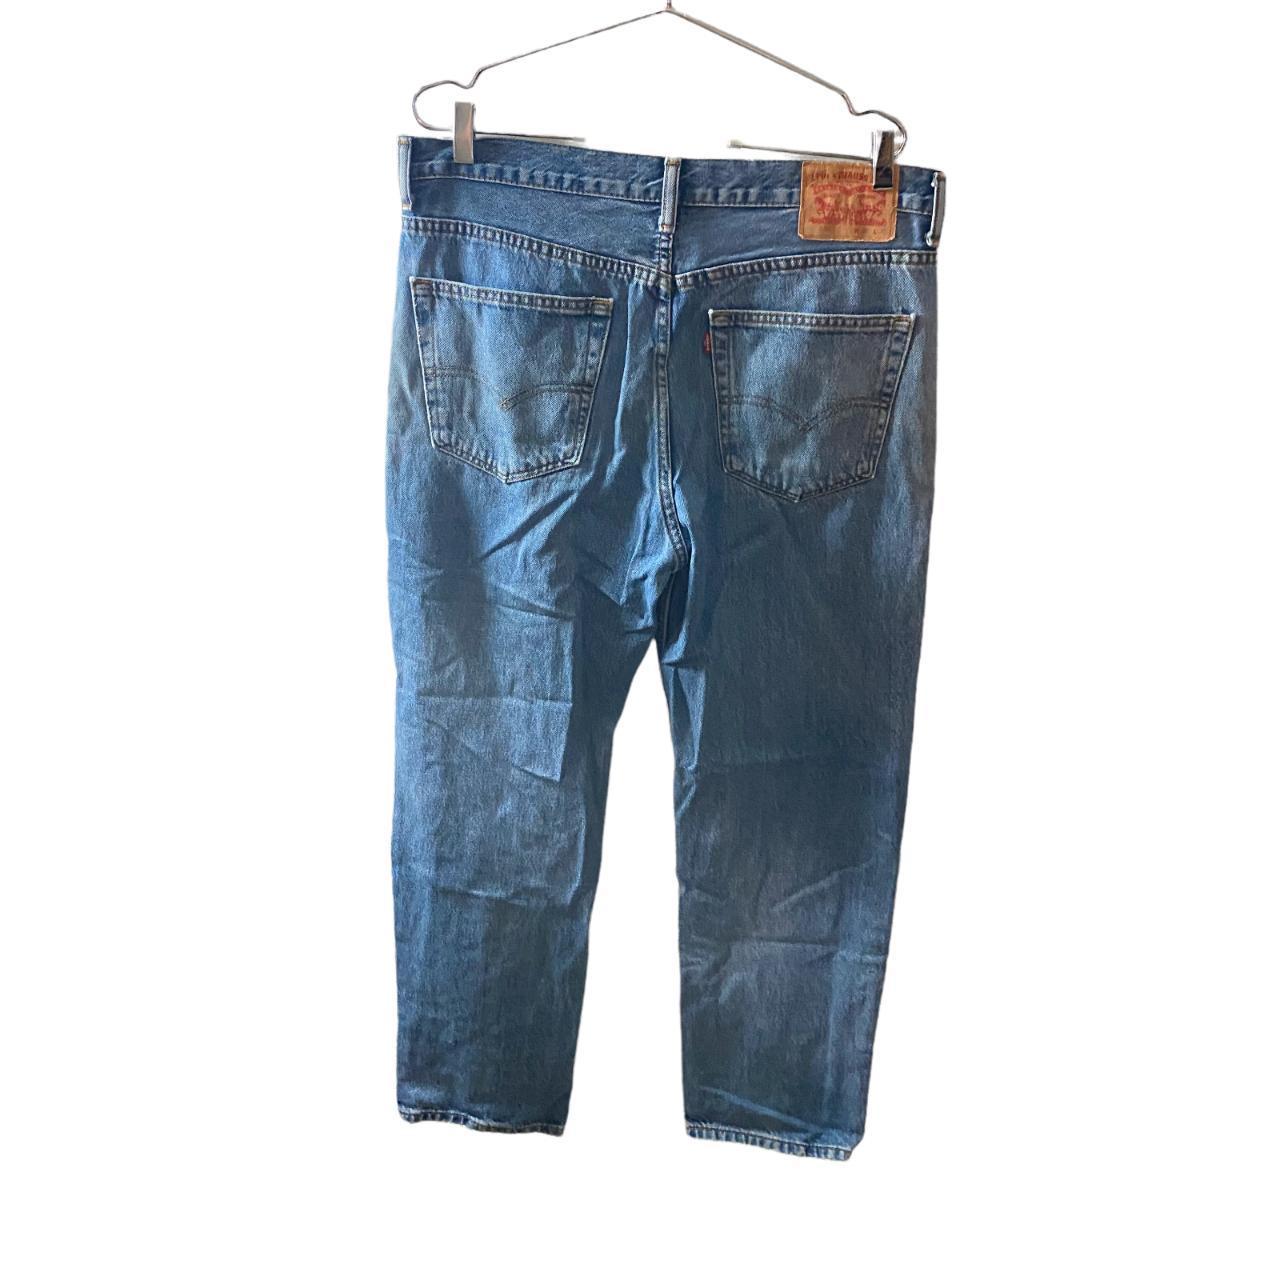 Levi's 504 Jeans Mens Size 34 x 30 Classic Fit Denim... - Depop